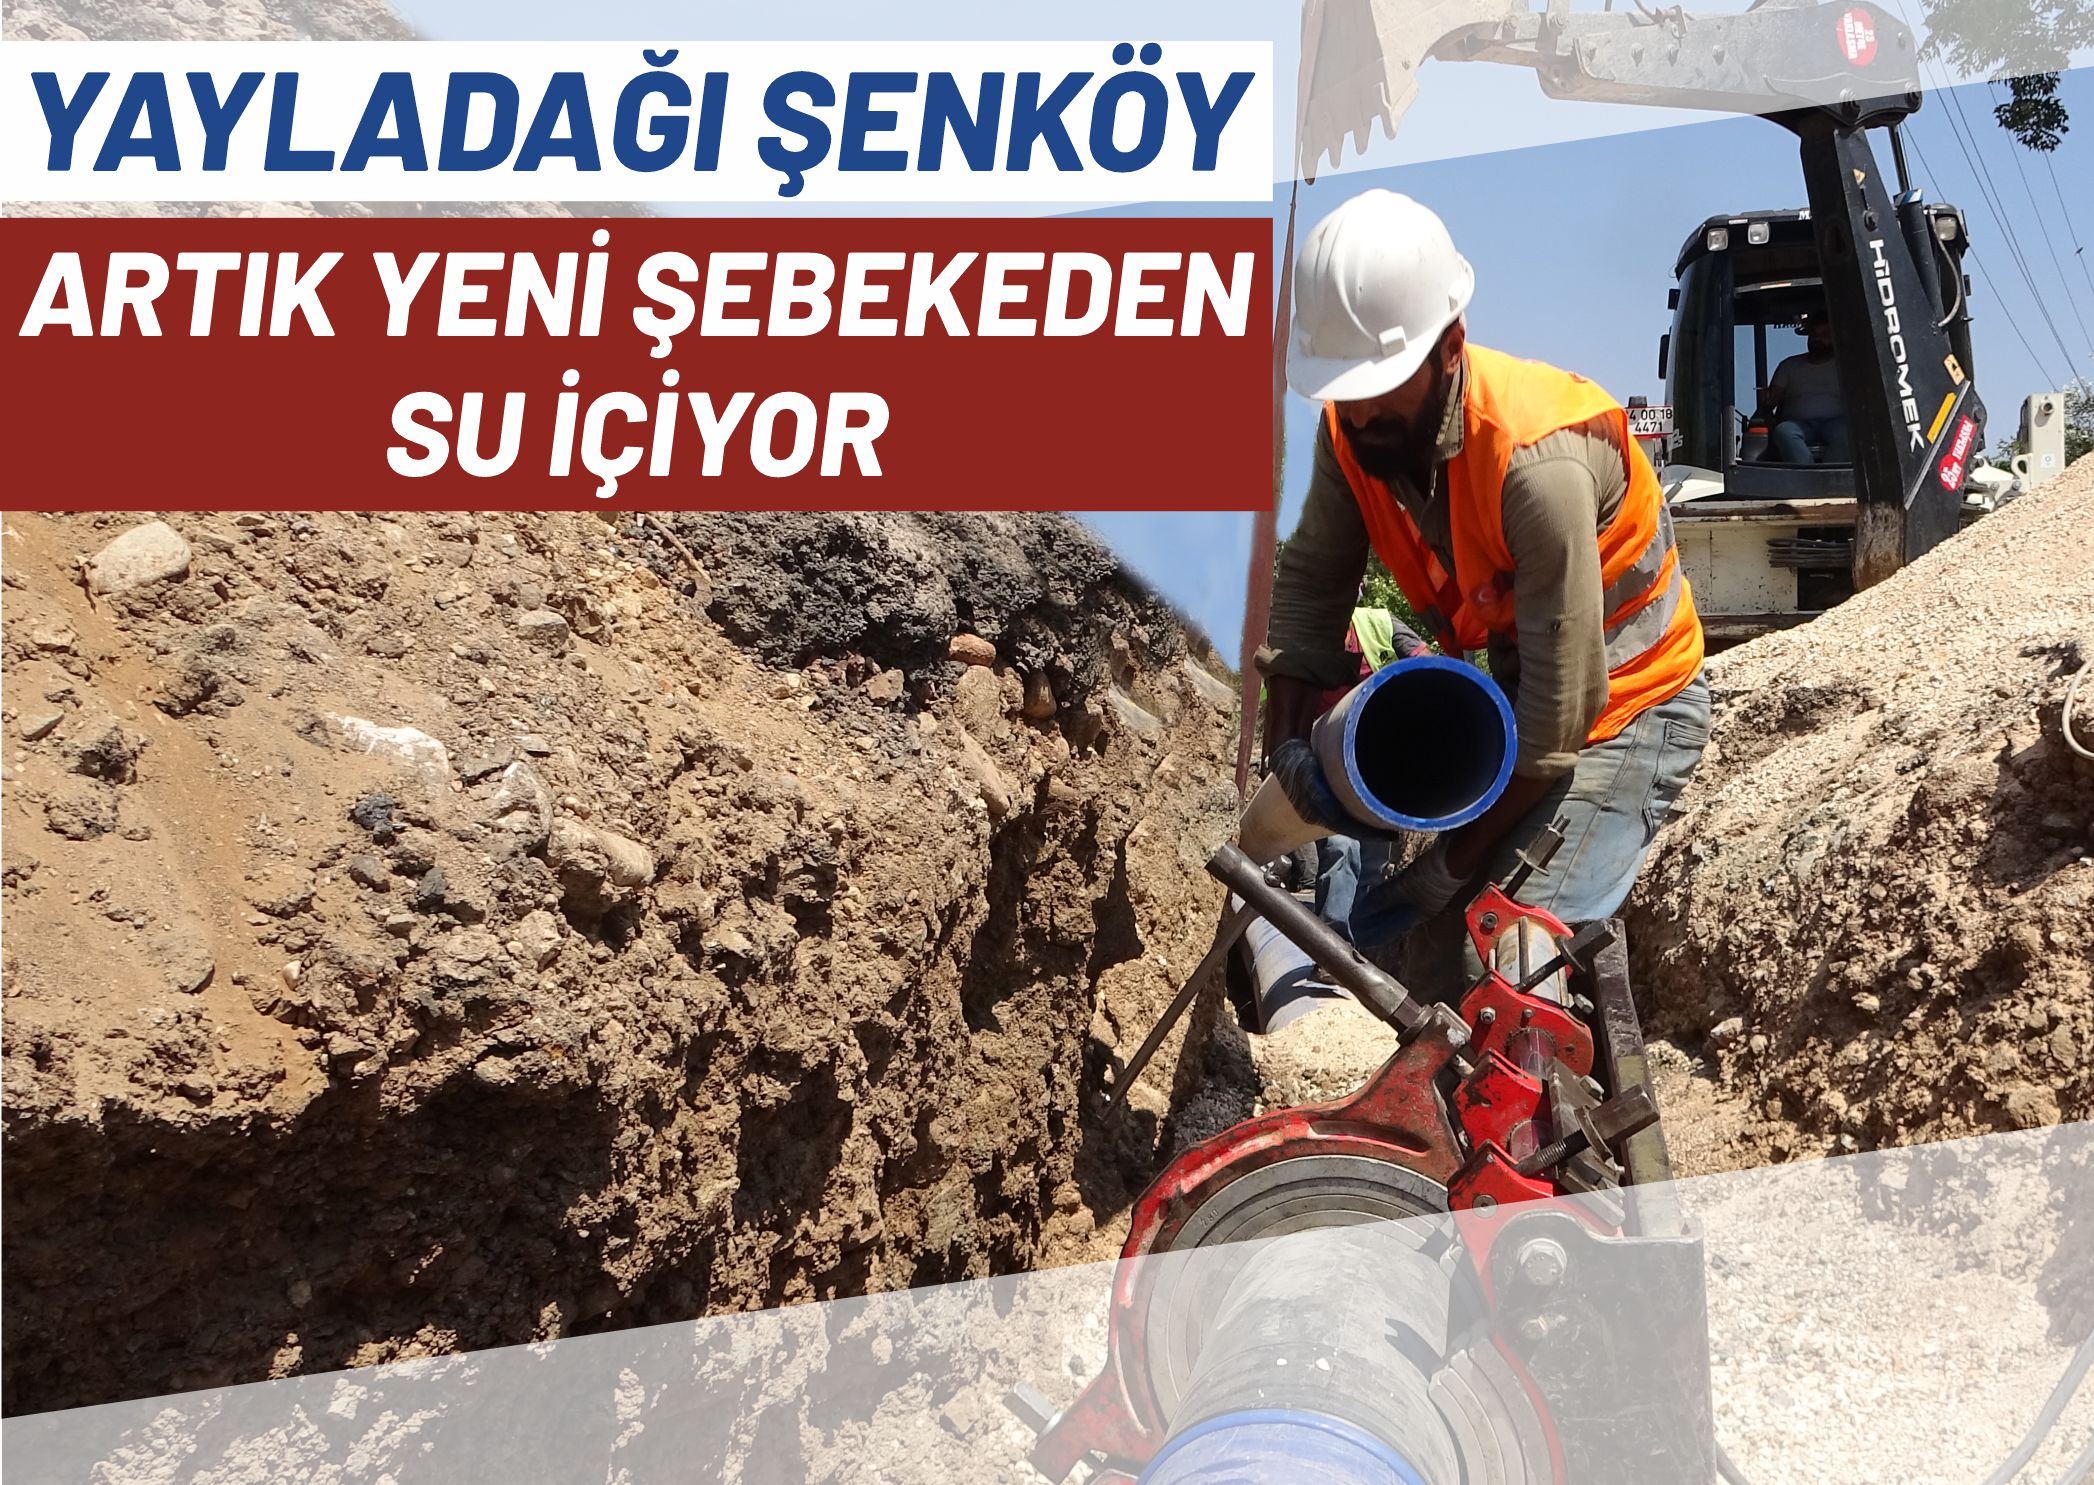 Yayladağı Şenköy Artık Yeni Şebekeden Su İçiyor